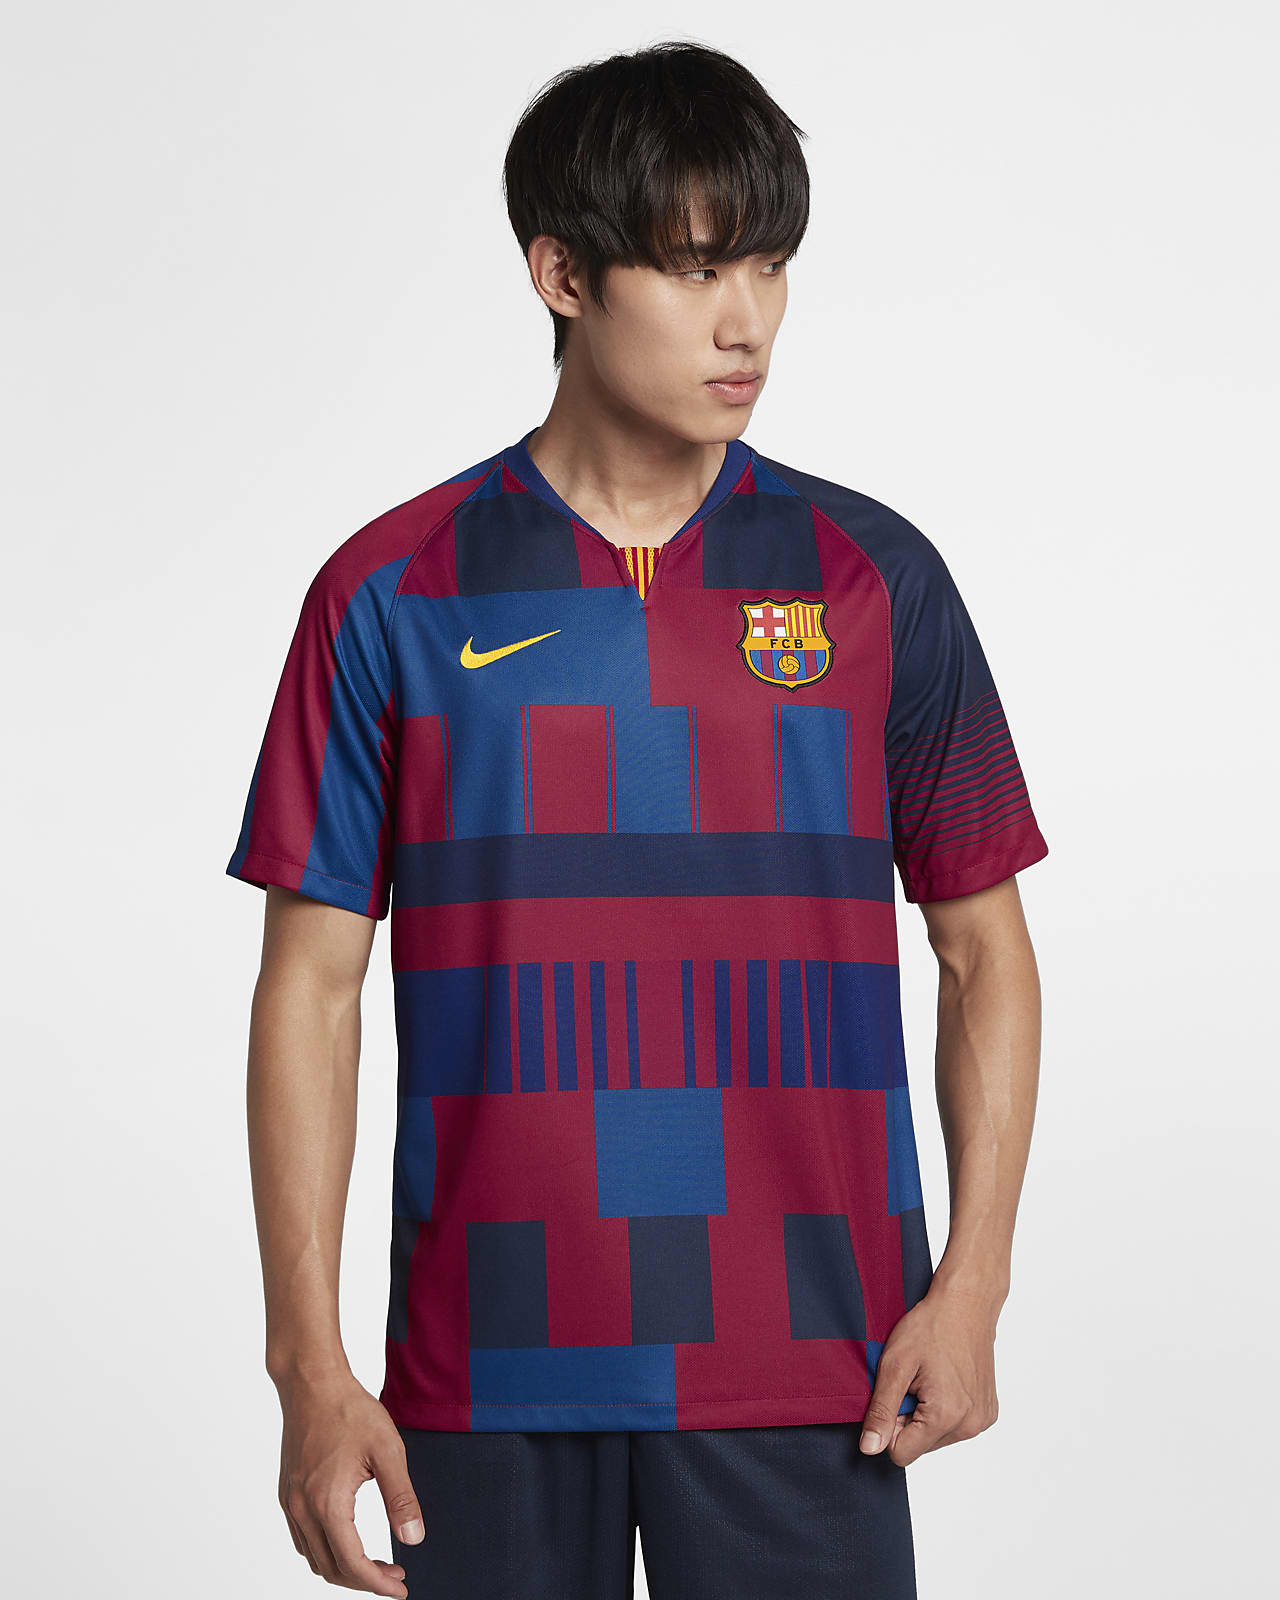 Camiseta para hombre FC Barcelona 20th Anniversary. Nike.com